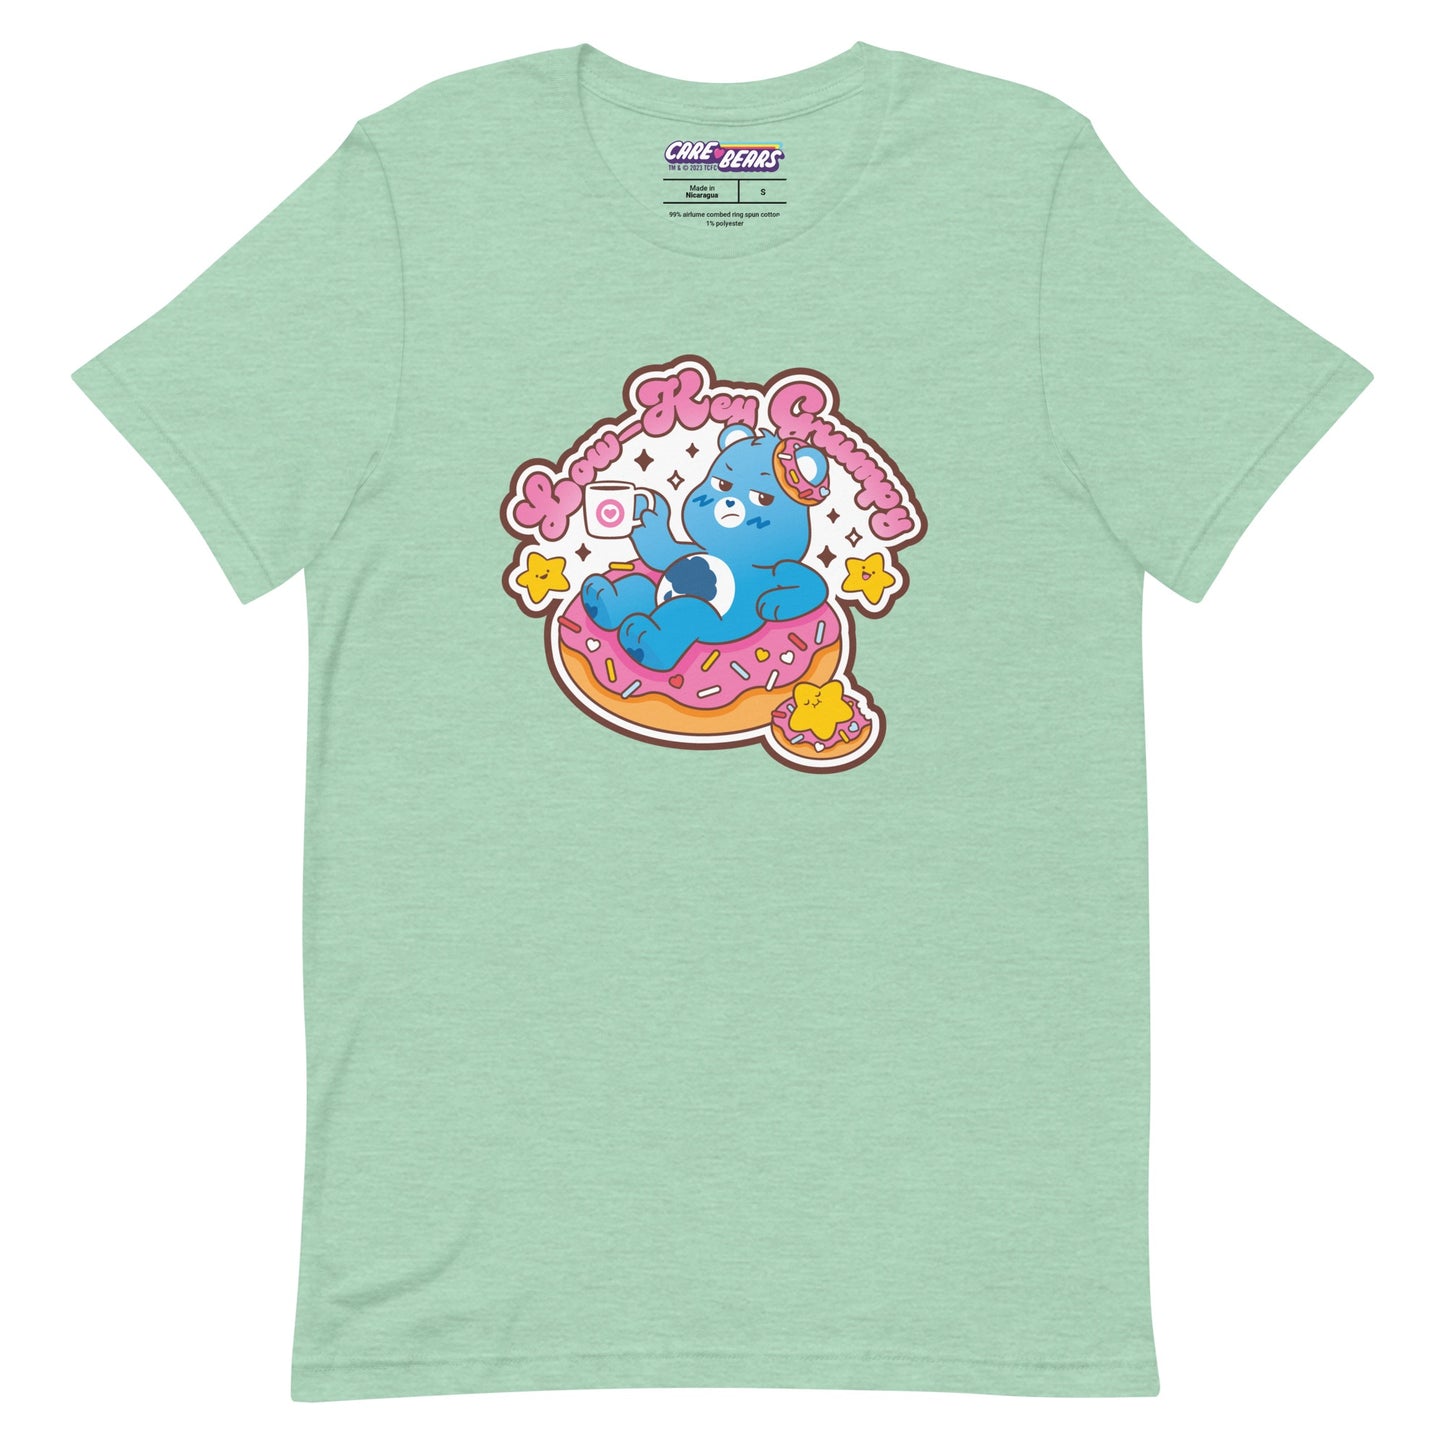 Care Bears Grumpy Bear™ Low-Key Grumpy T-Shirt